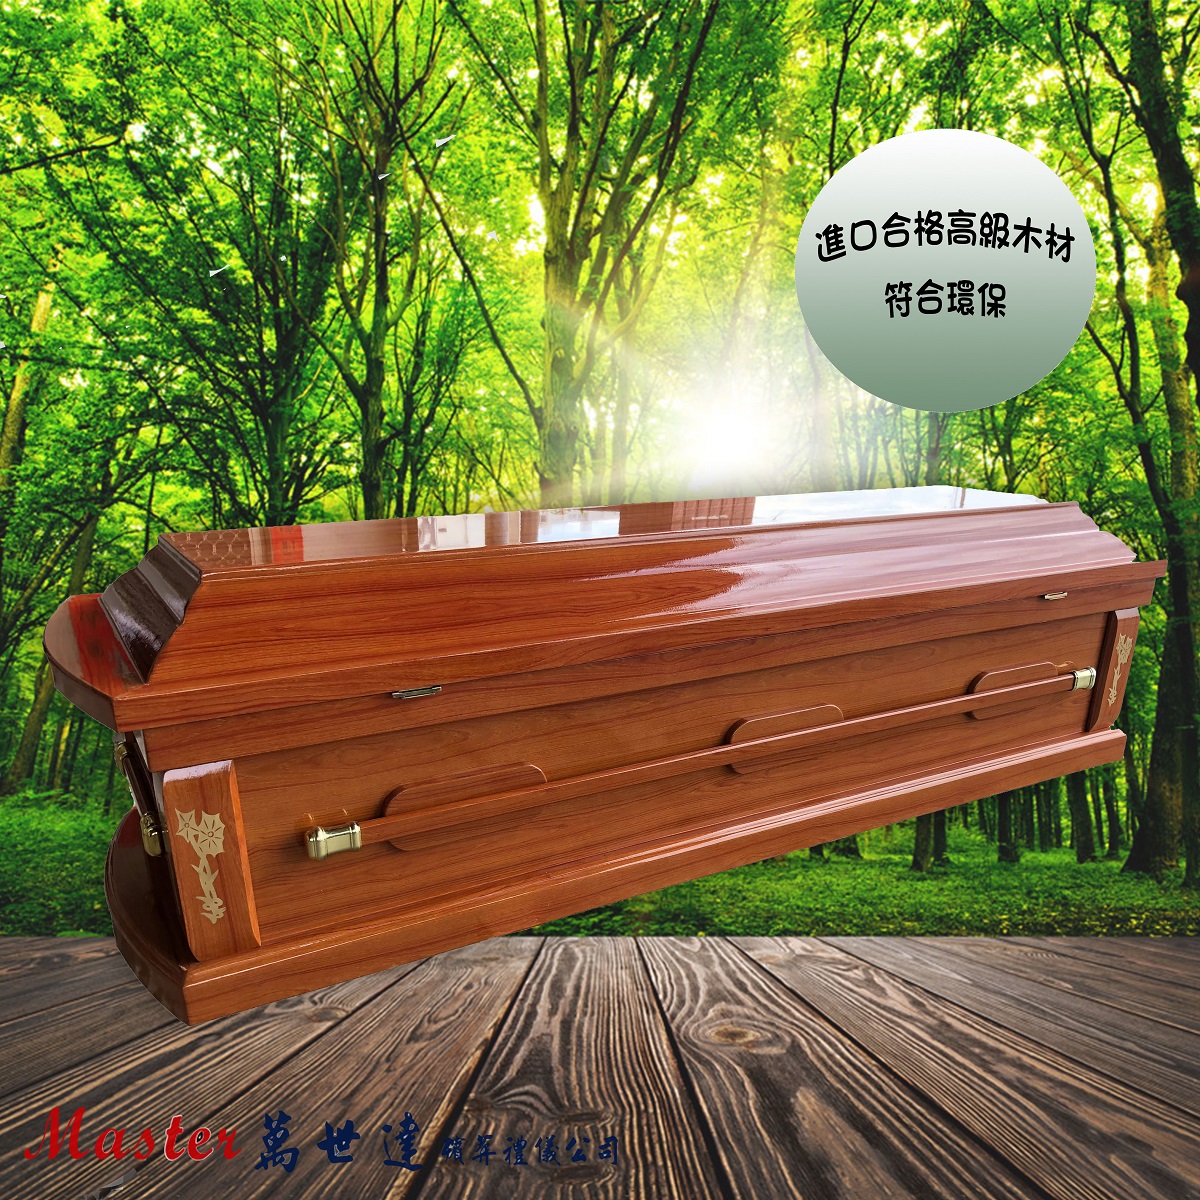 【入殮出】十字架基督天主火化平蓋胡桃木扶手棺2.0尺